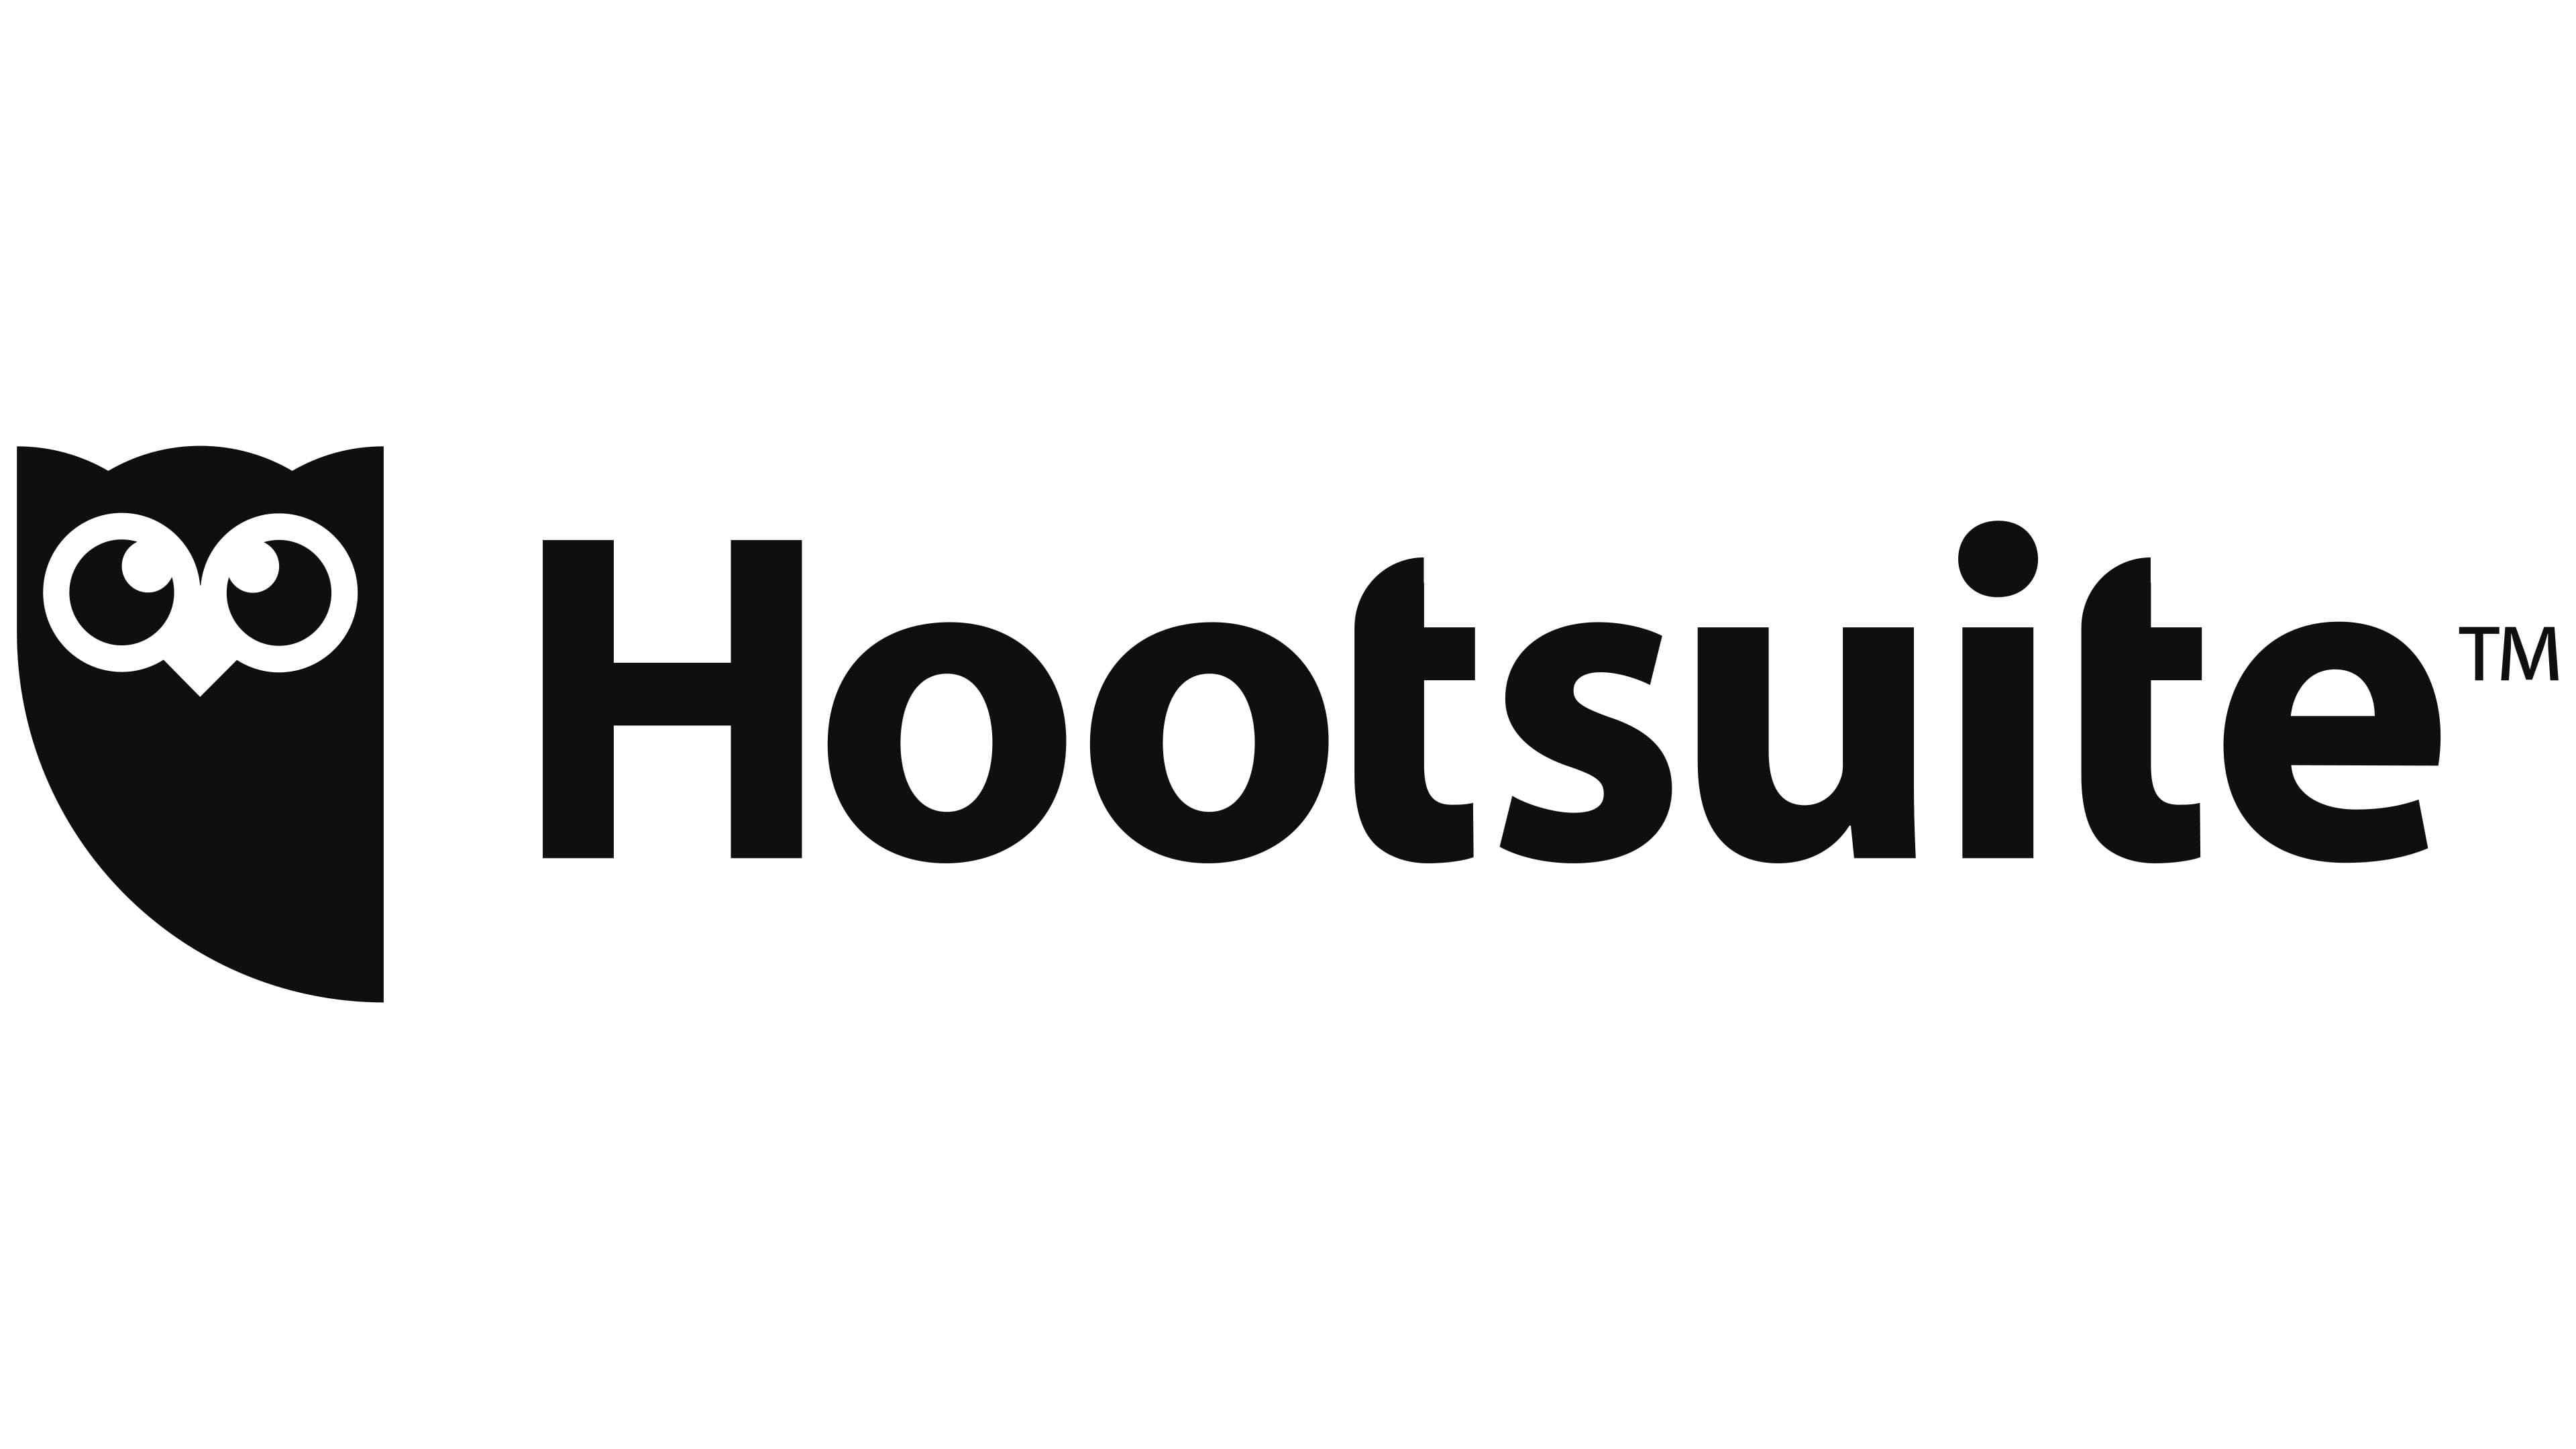 Hootsuite Logo - LOGOS de MARCAS